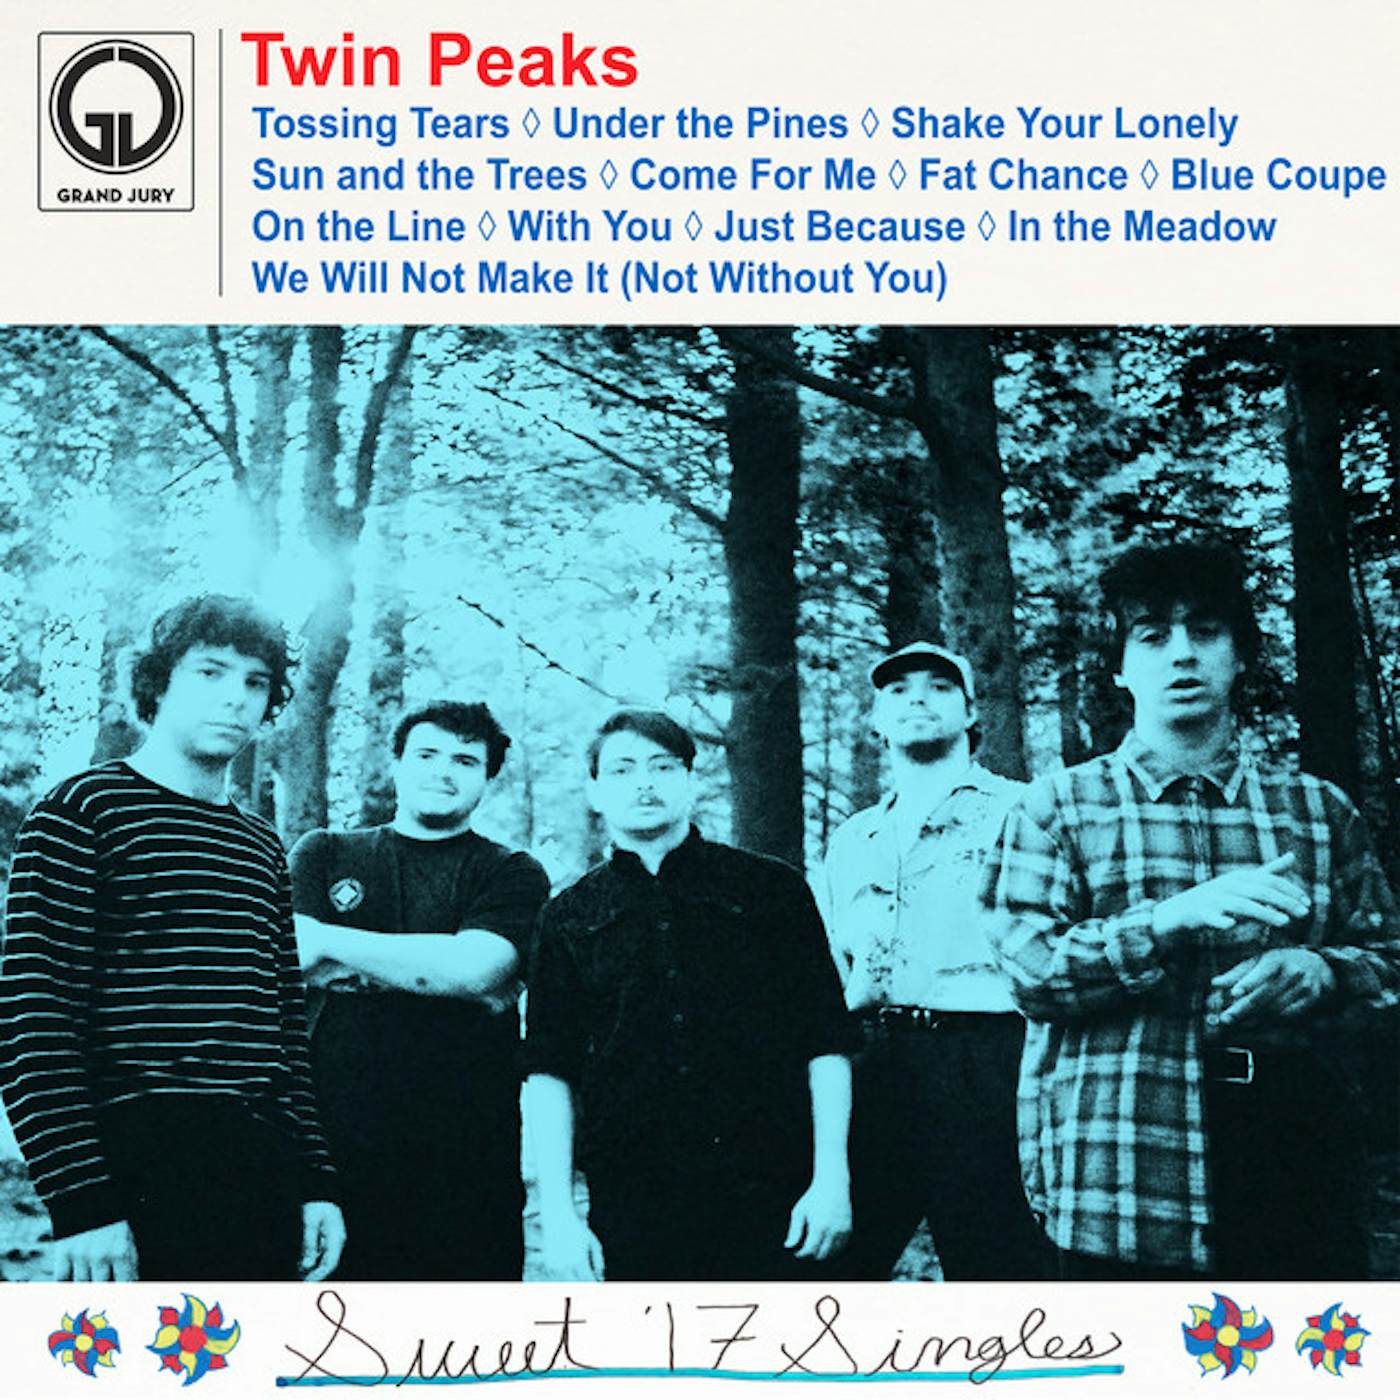 Twin Peaks Sweet '17 Singles Vinyl Record